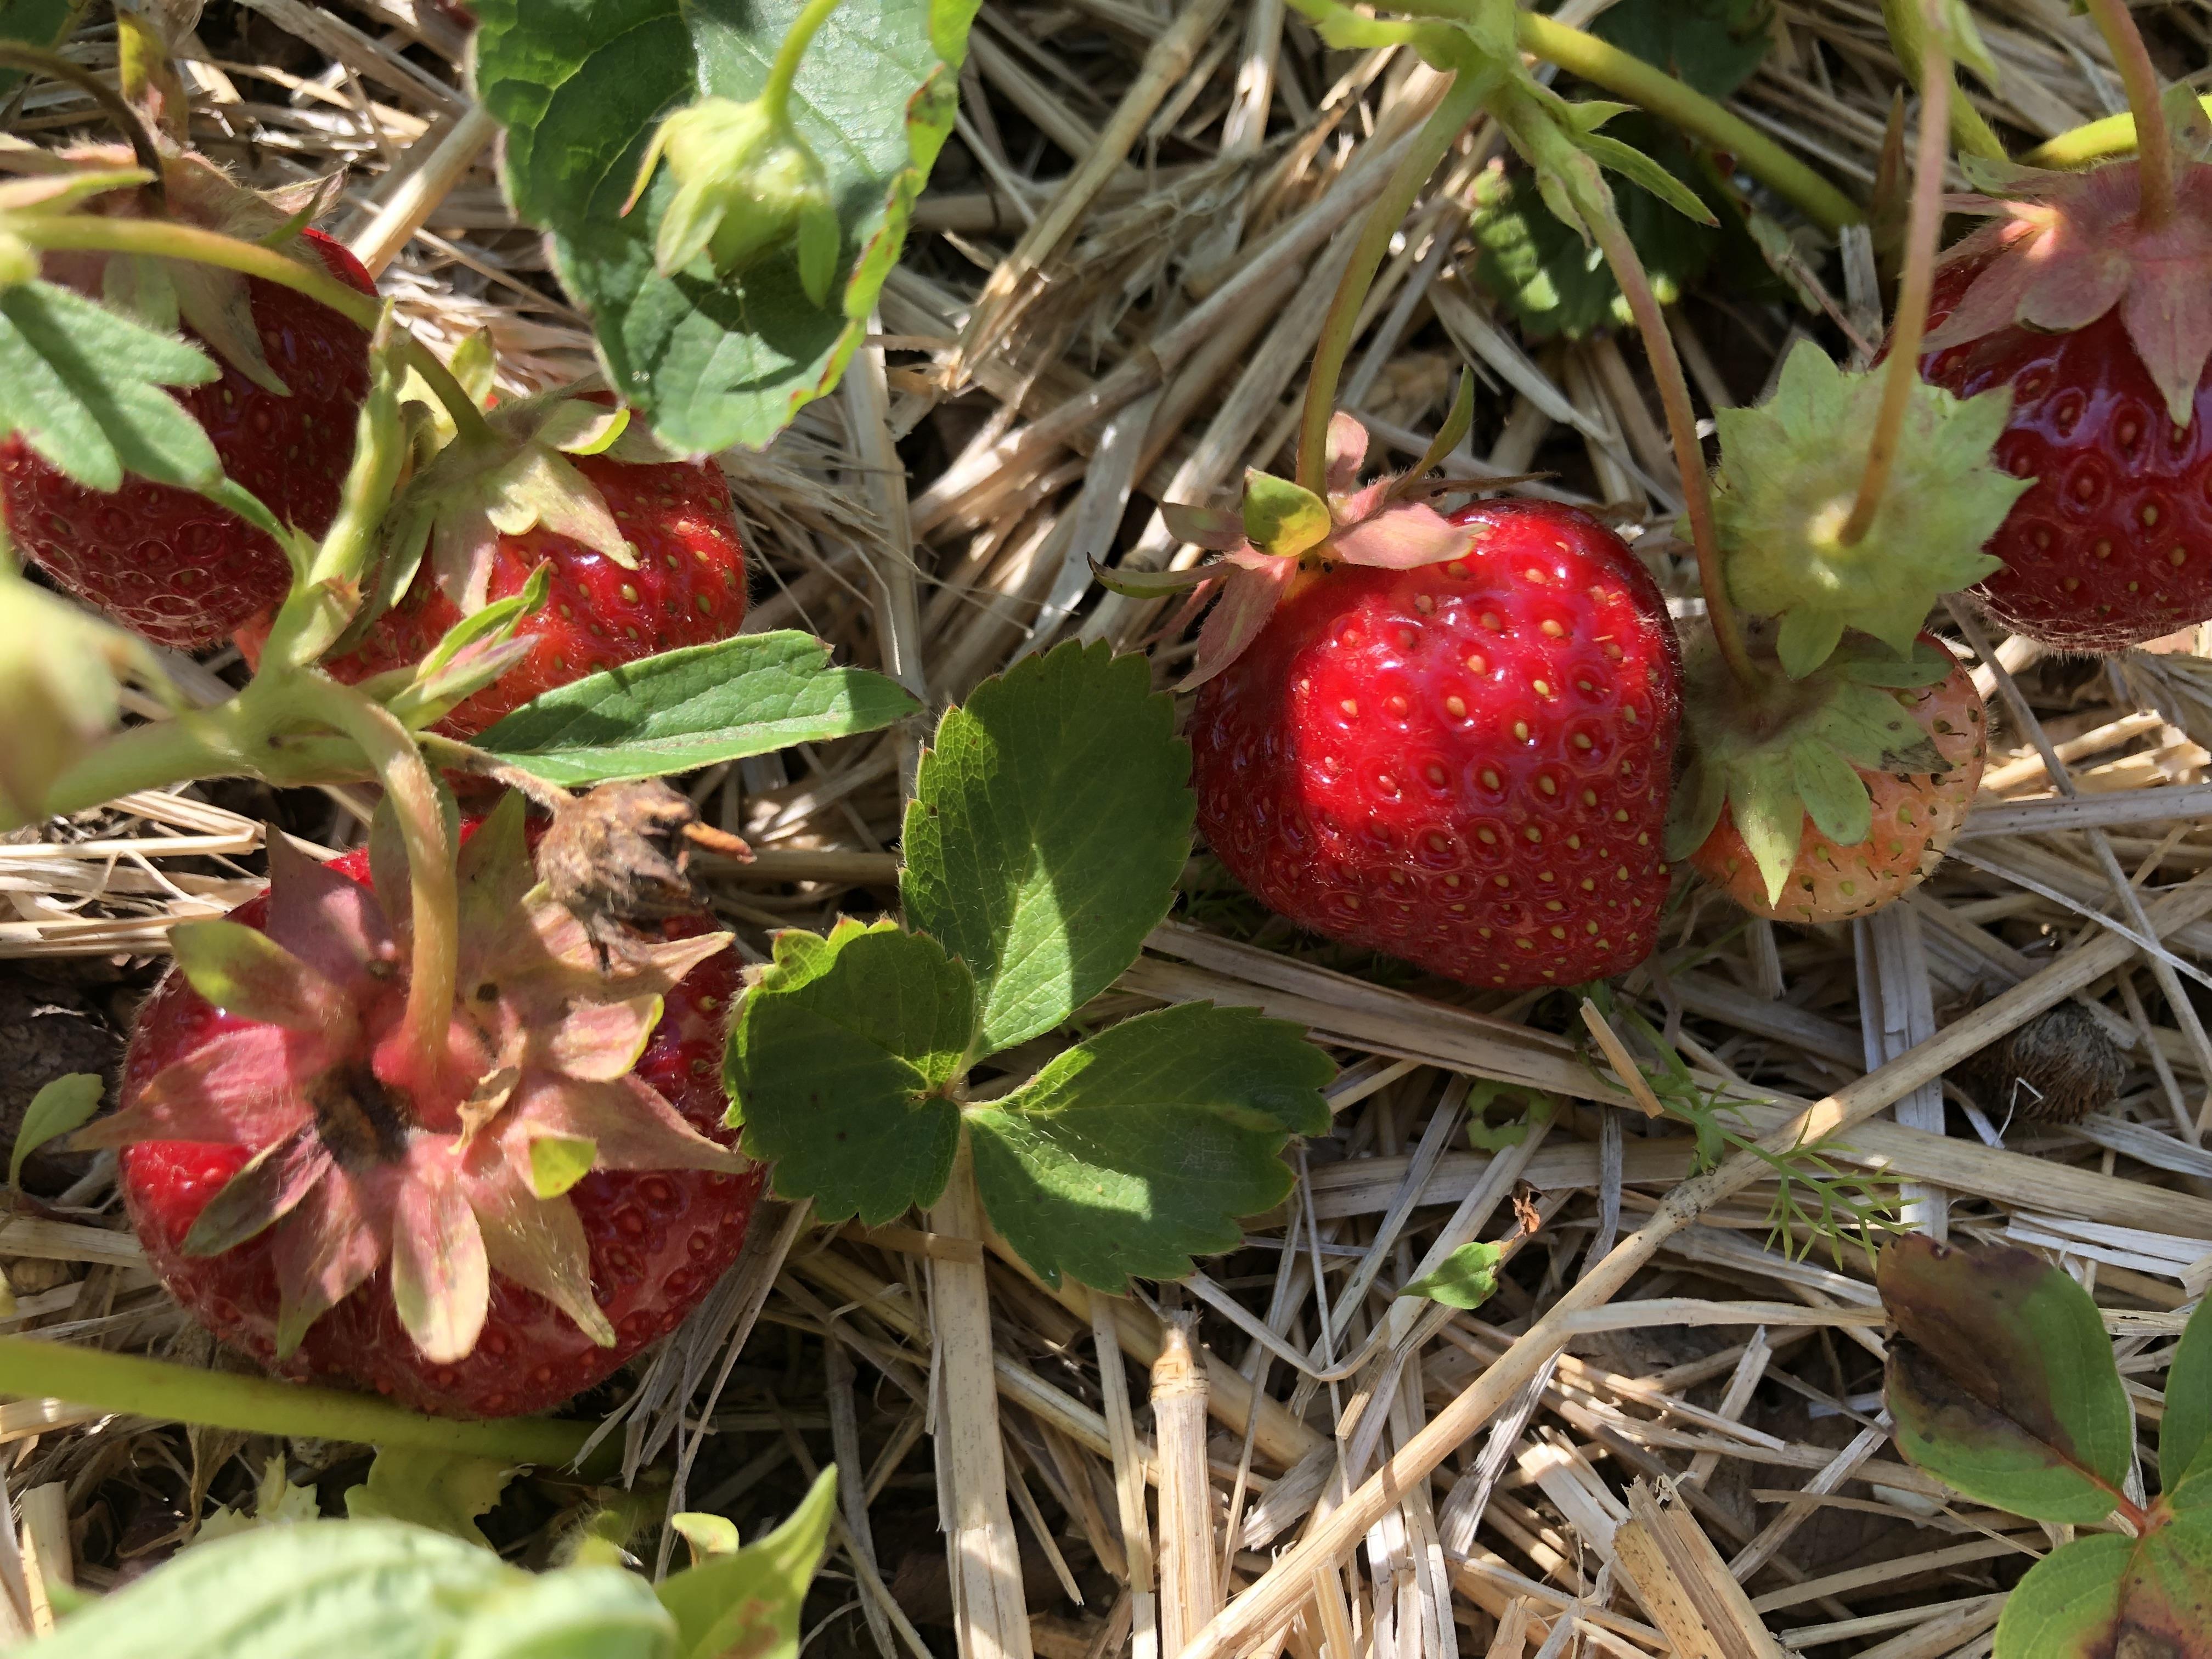 Cueillir des fraises pour soi et pour aider les agriculteurs
Cueillir des fraises pour soi et pour aider les agriculteurs